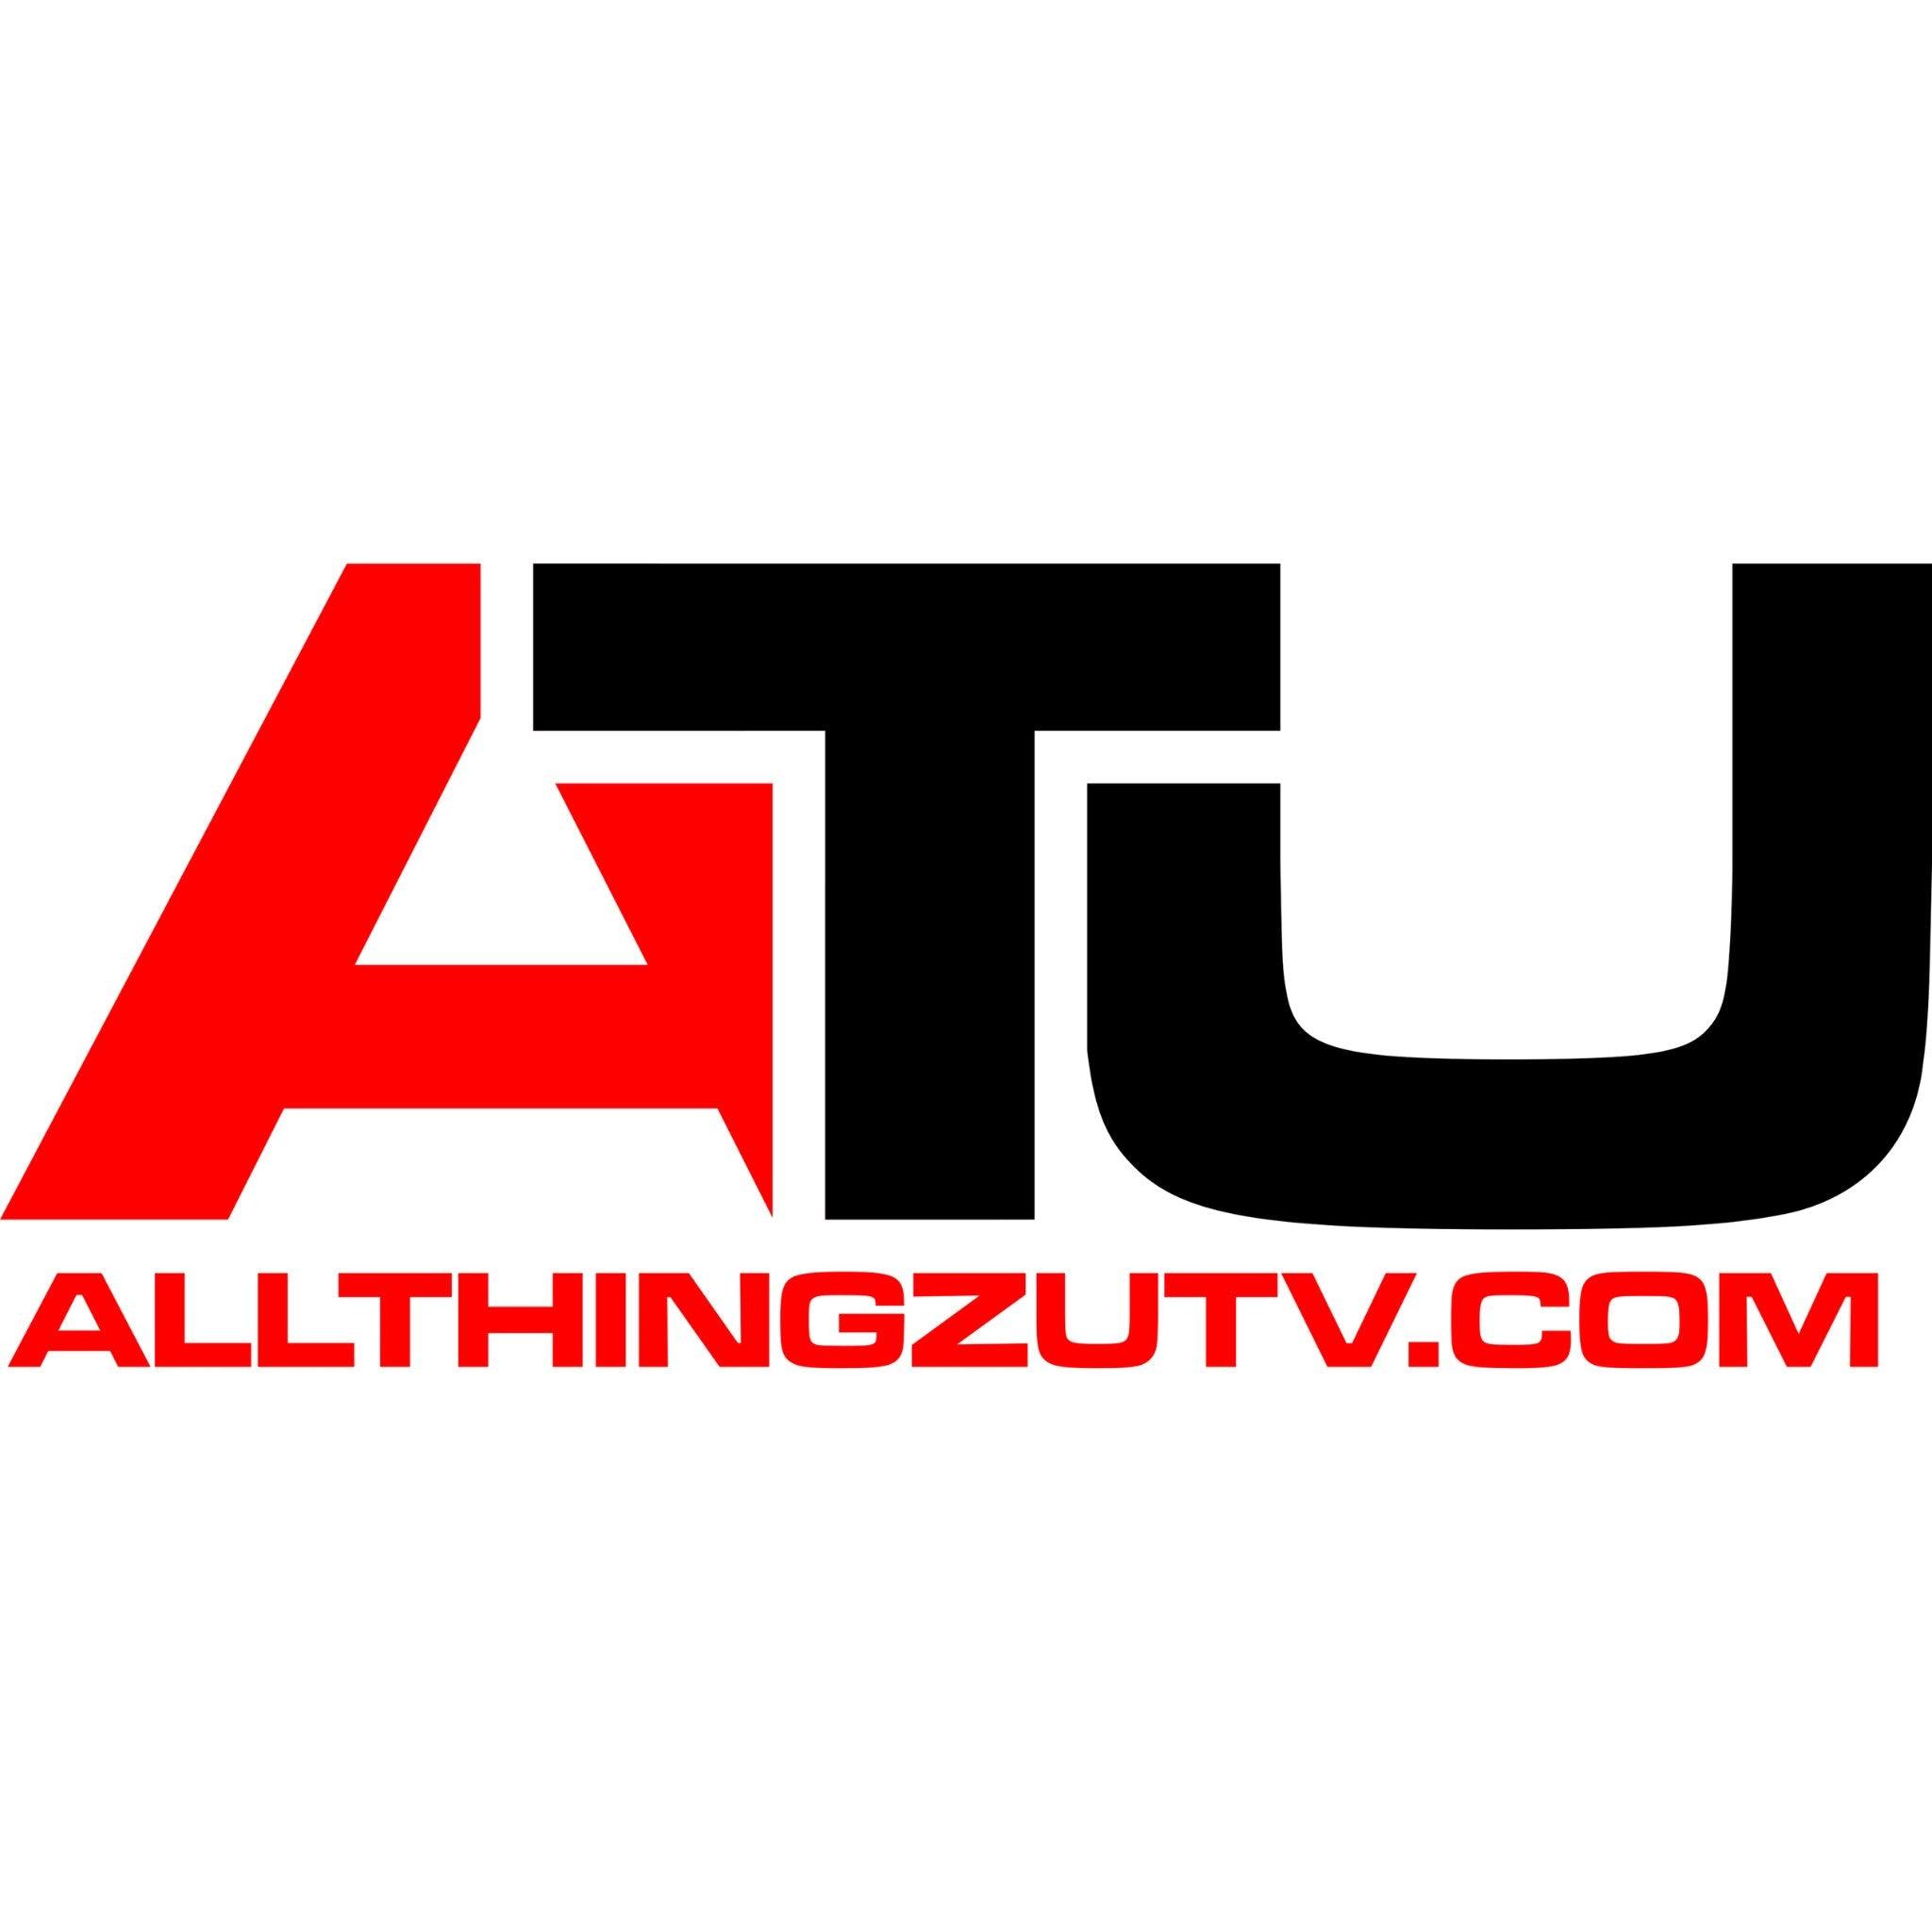 All Thingz UTV - R1 Industries